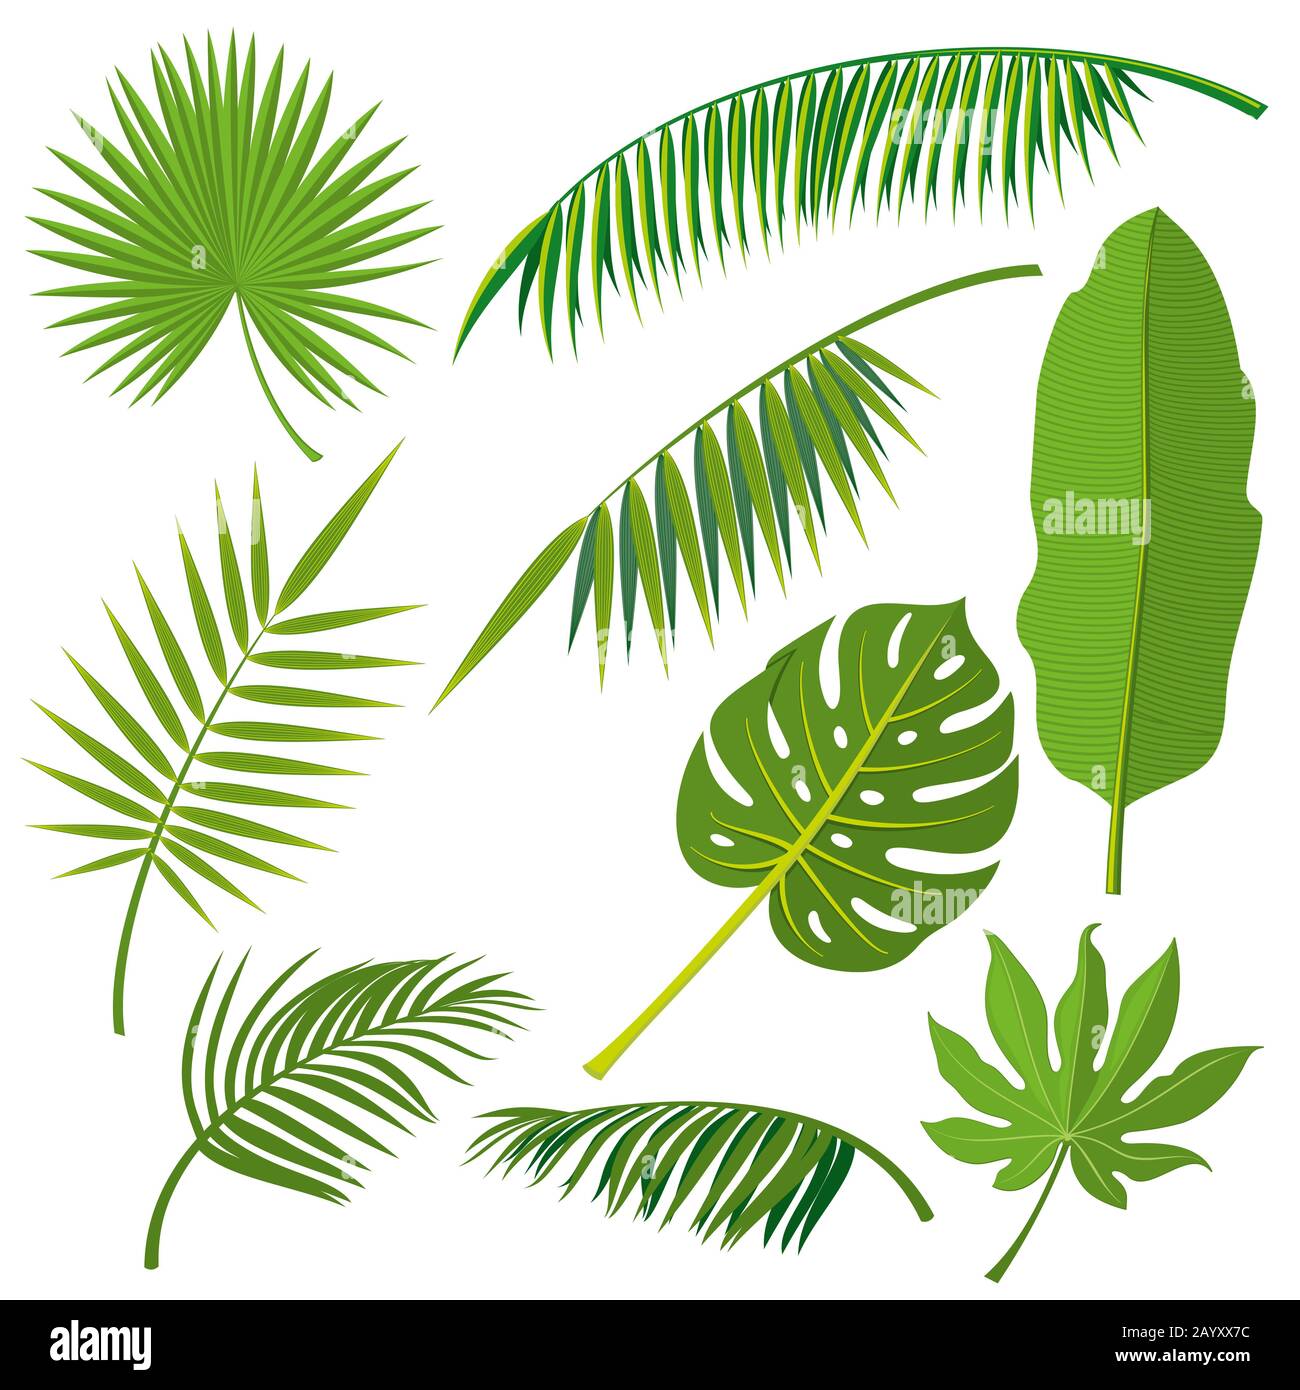 Tropischer Palmendschungel lässt Vektor setzen. Blattnatürlich aus Dschungel, grüne exotische Blätter sind Veranschaulichung Stock Vektor